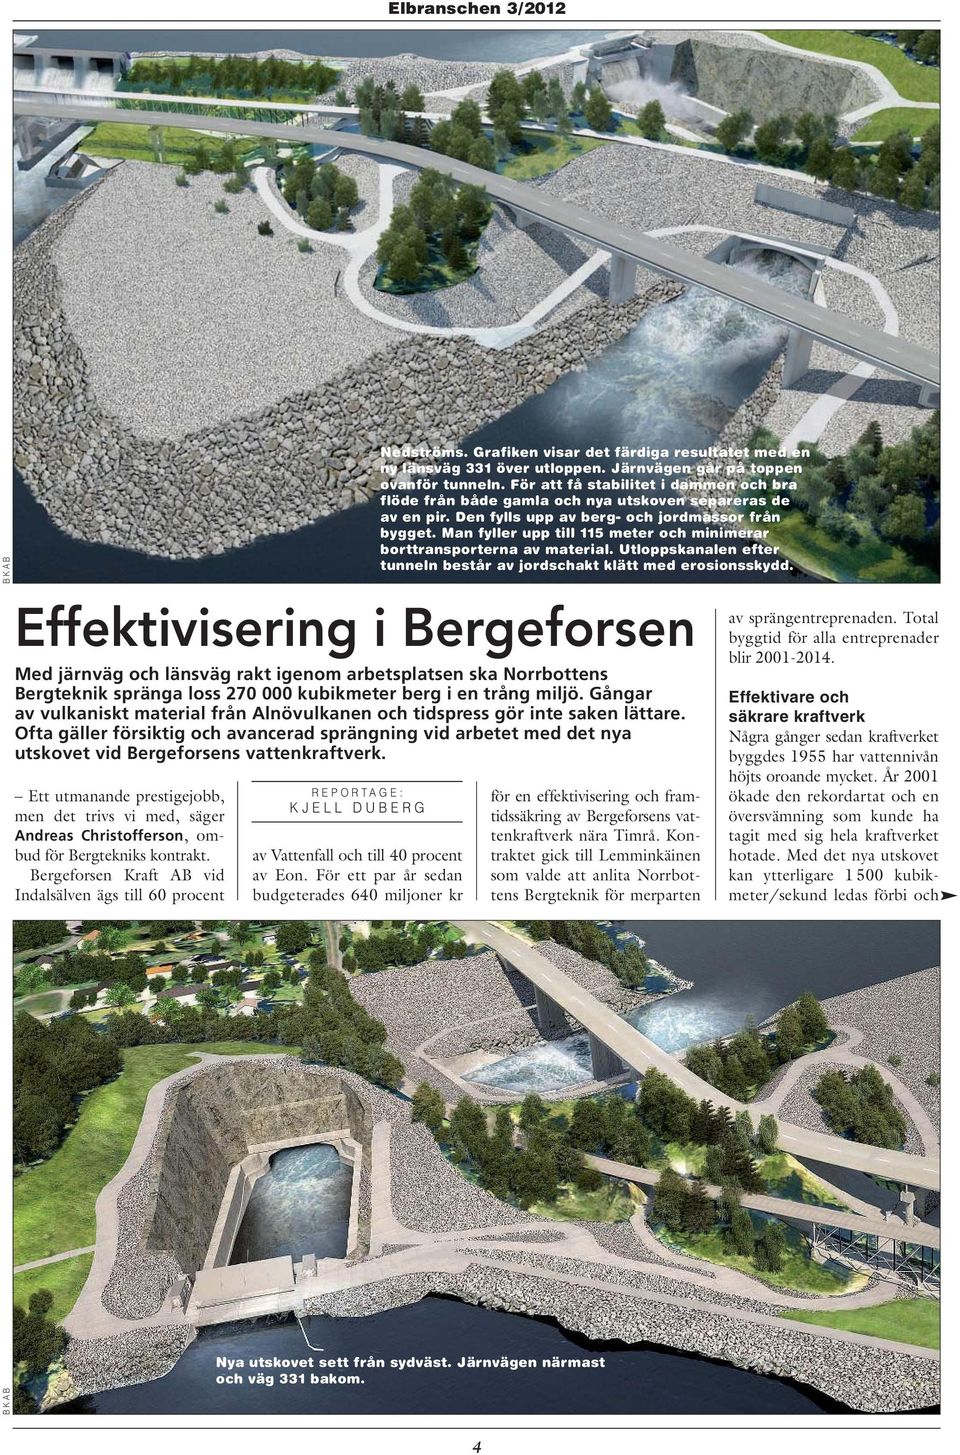 Ett utmanande prestigejobb, men det trivs vi med, säger Andreas Christofferson, ombud för Bergtekniks kontrakt.